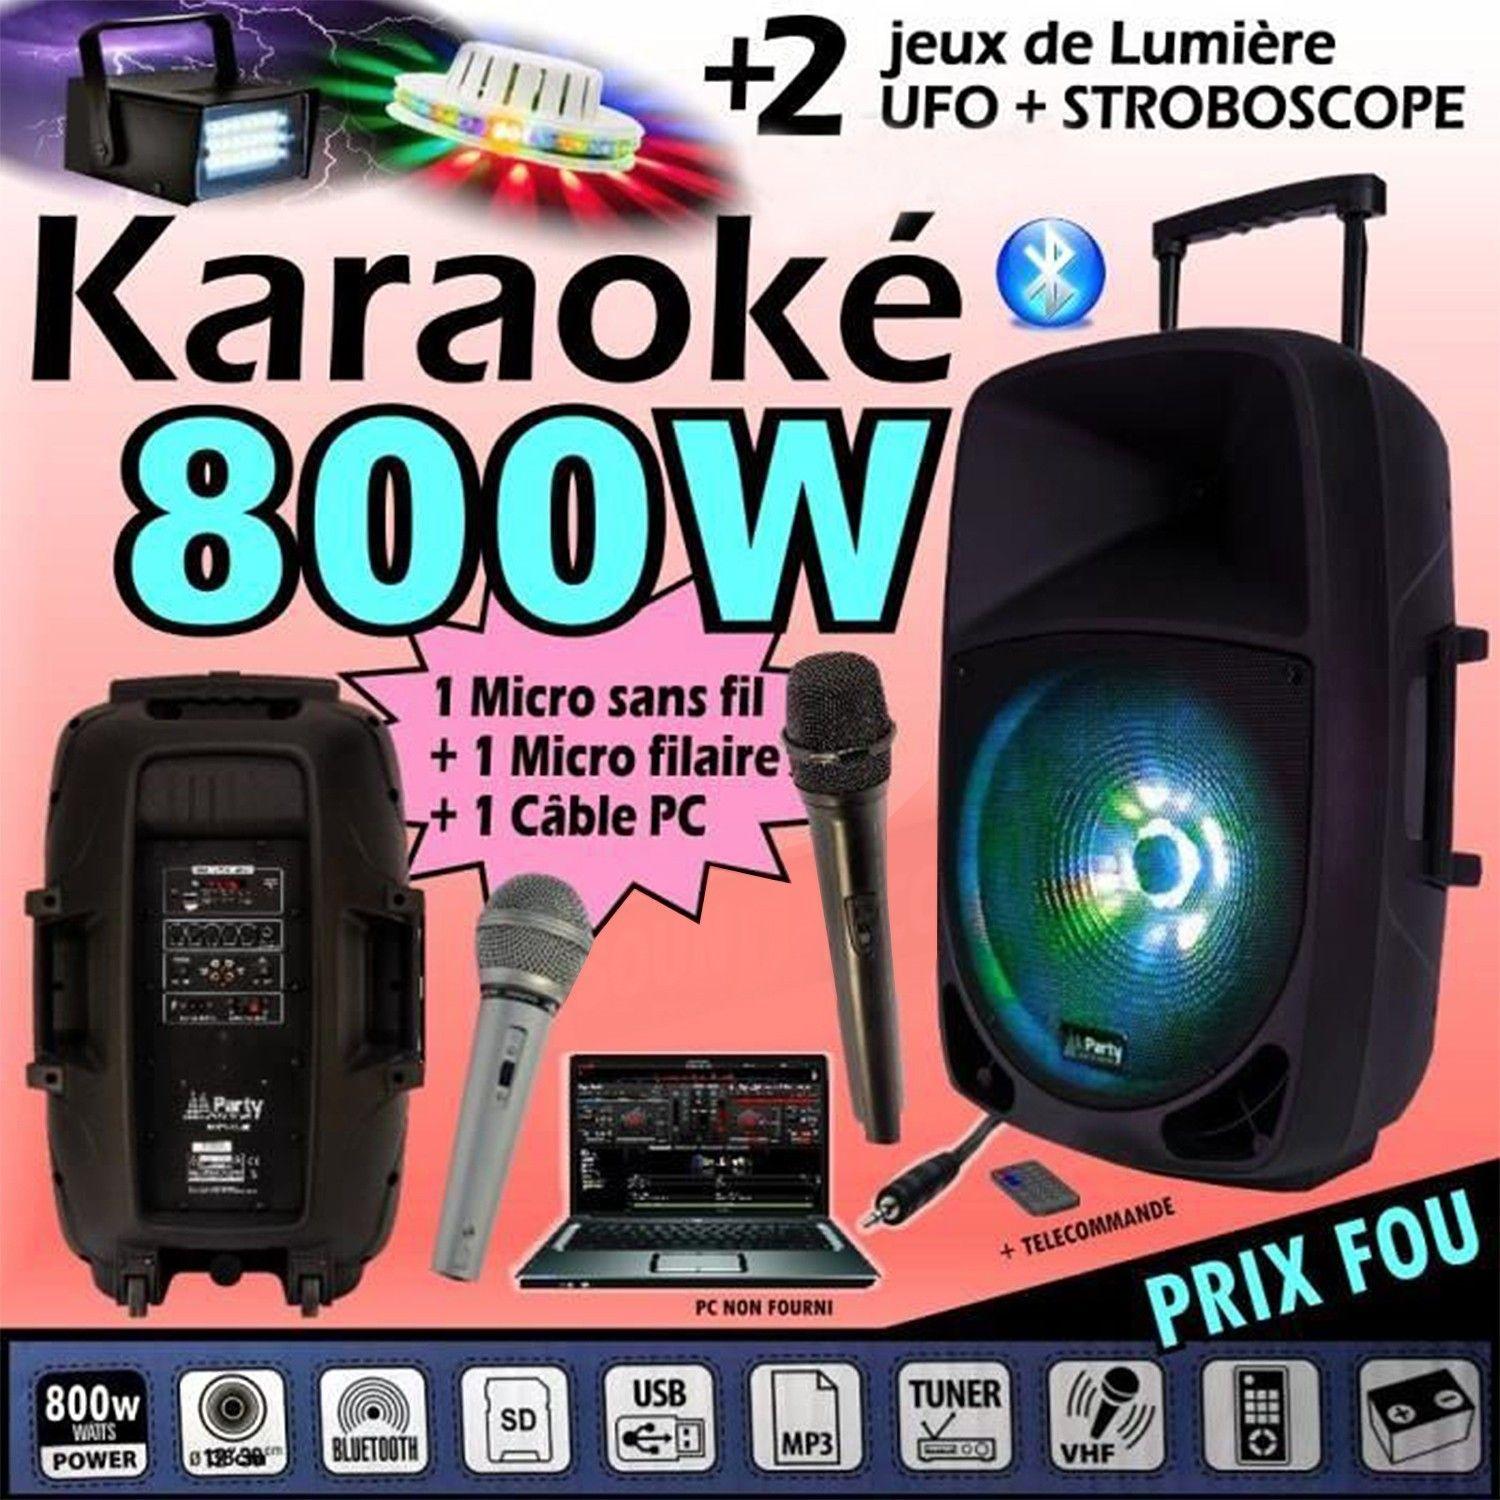 Lecteur Karaoké Festinight kit karaoké party sound & light